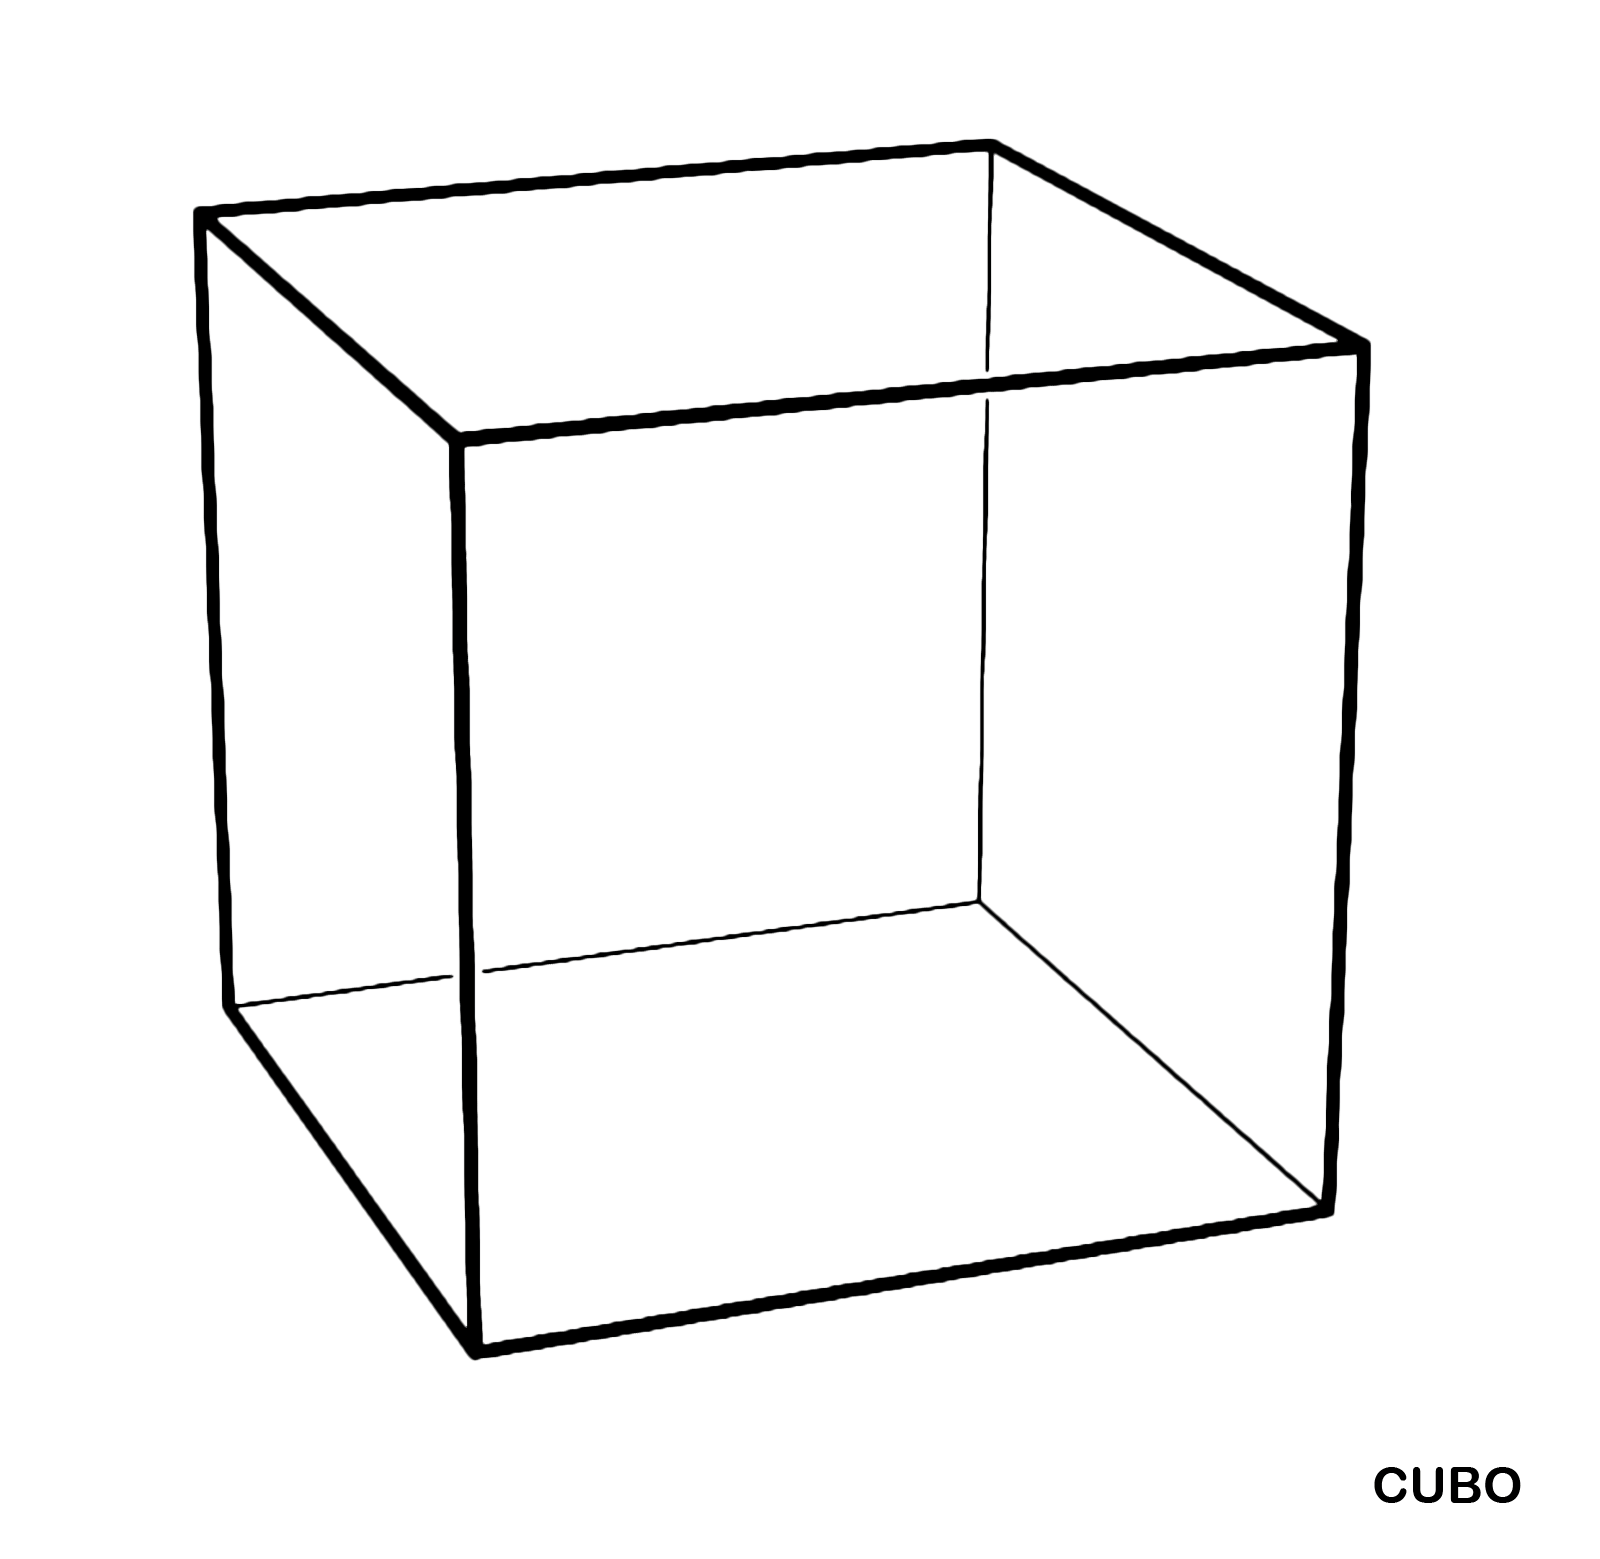 Figure geometriche - Figura geometrica solida - Cubo